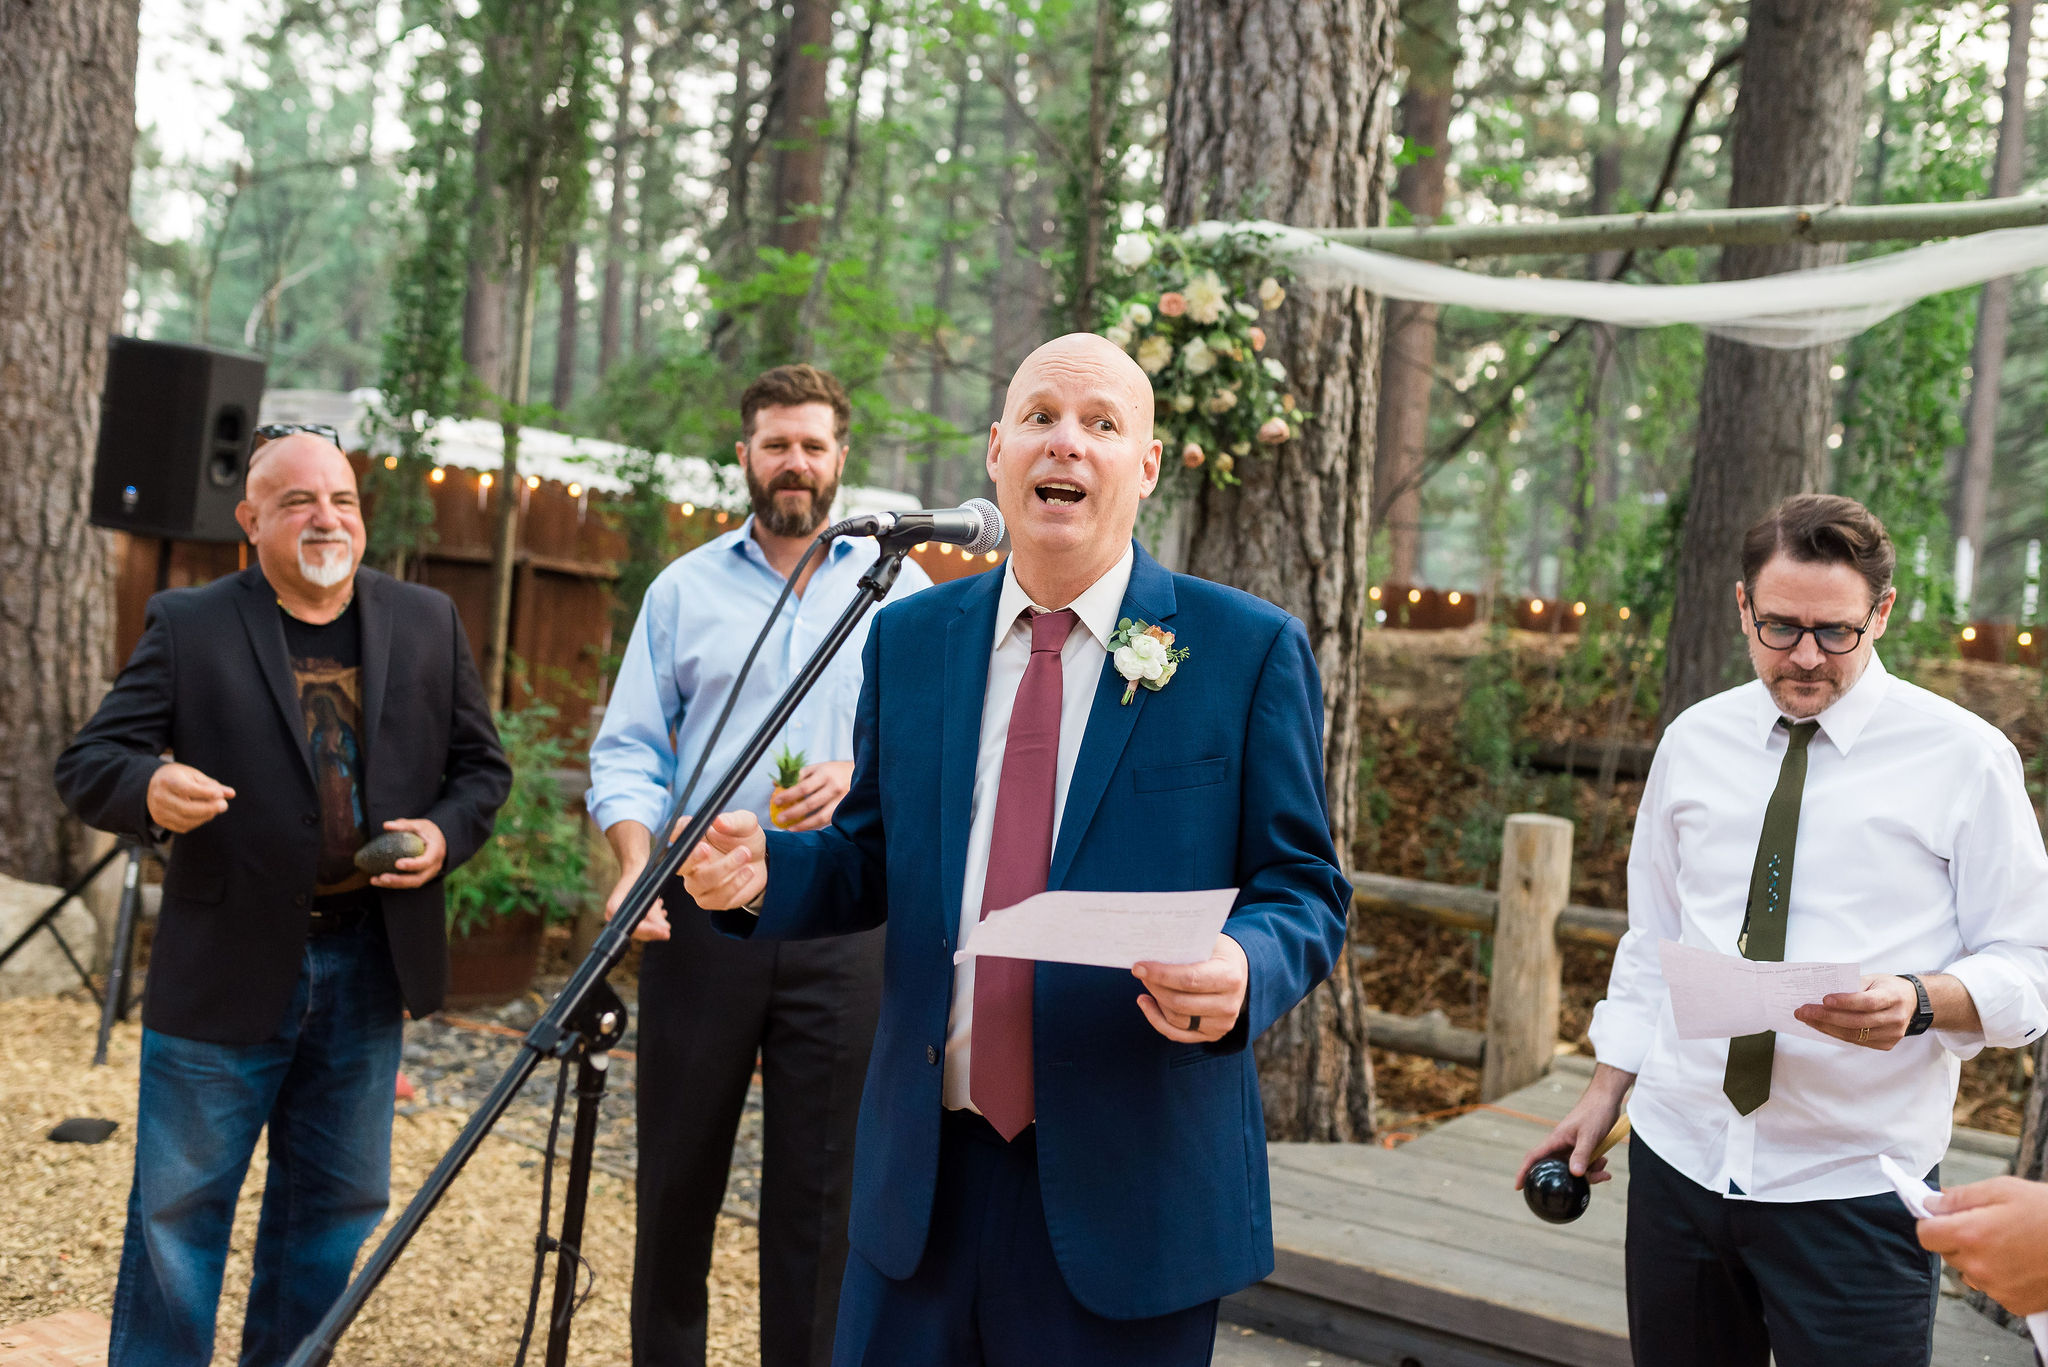 Tahoe backyard wedding